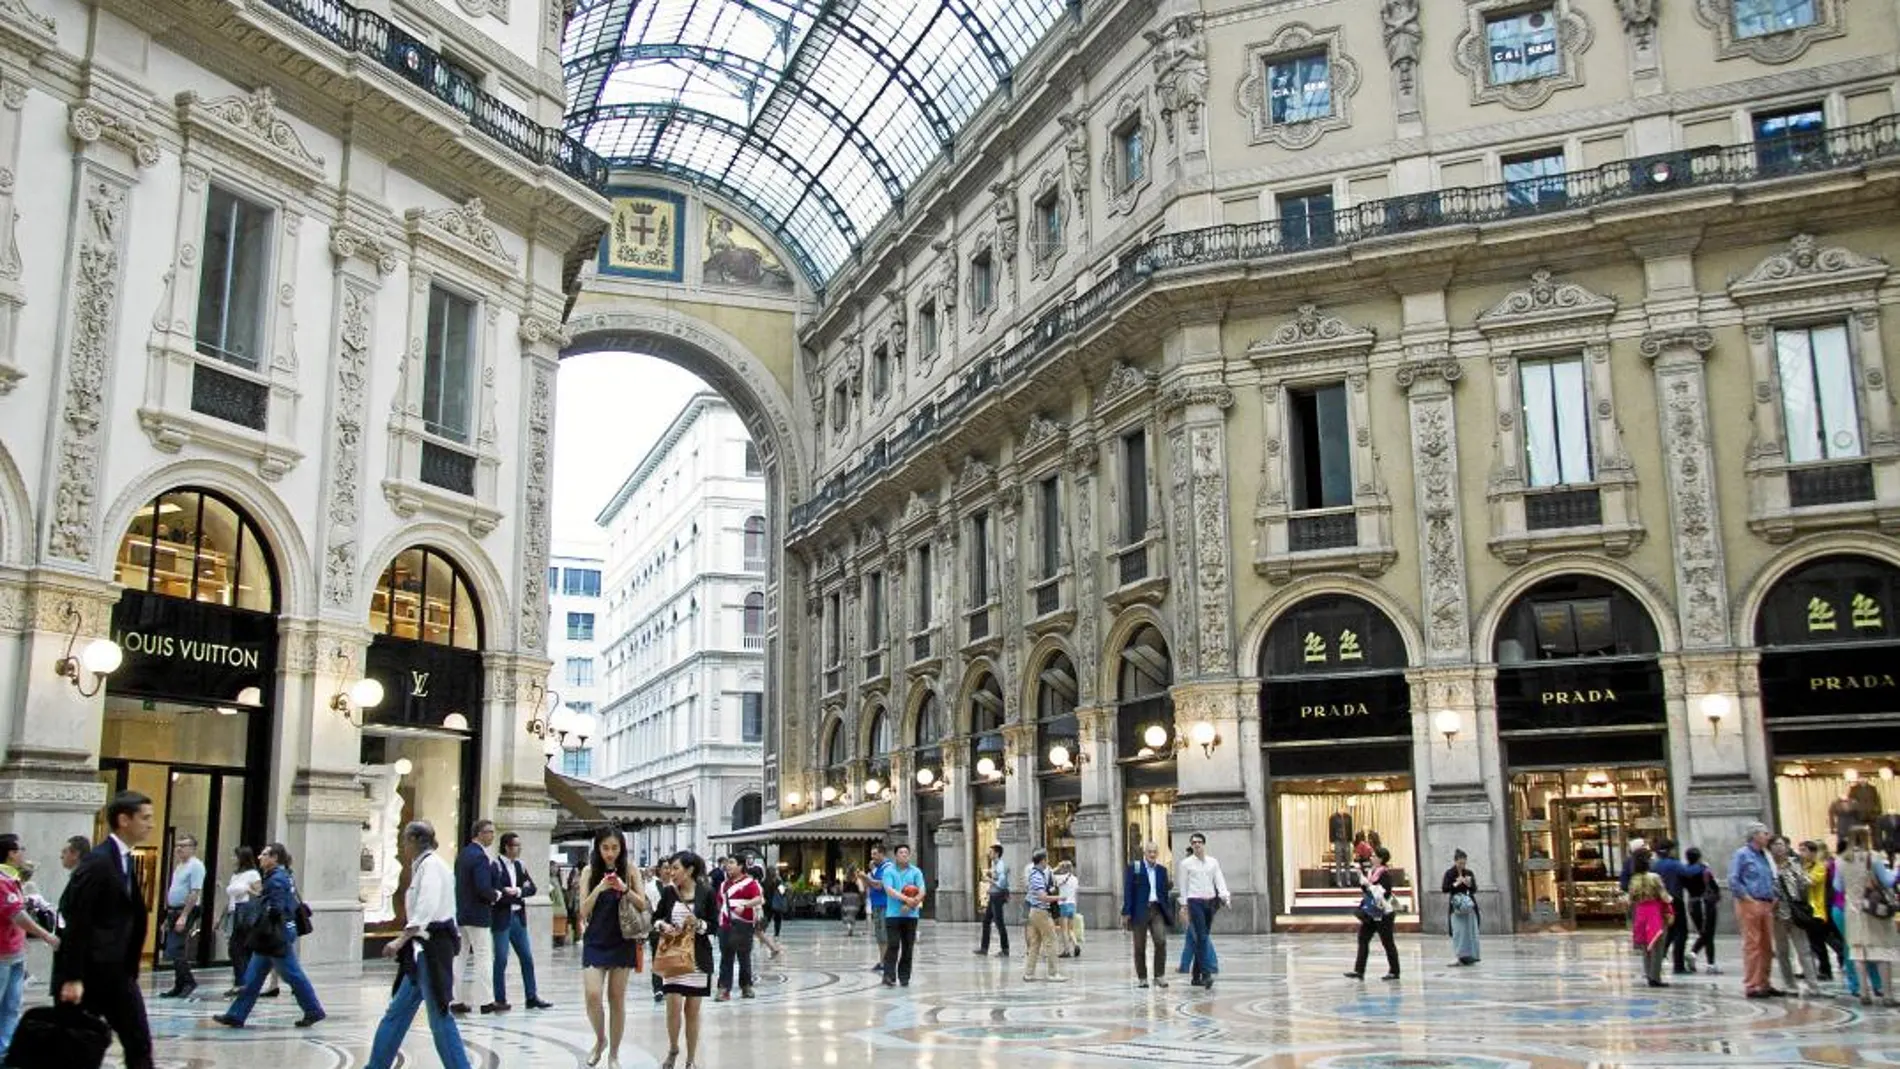 La galería Vittorio Emanuele II es uno de los lugares emblemáticos de Milán